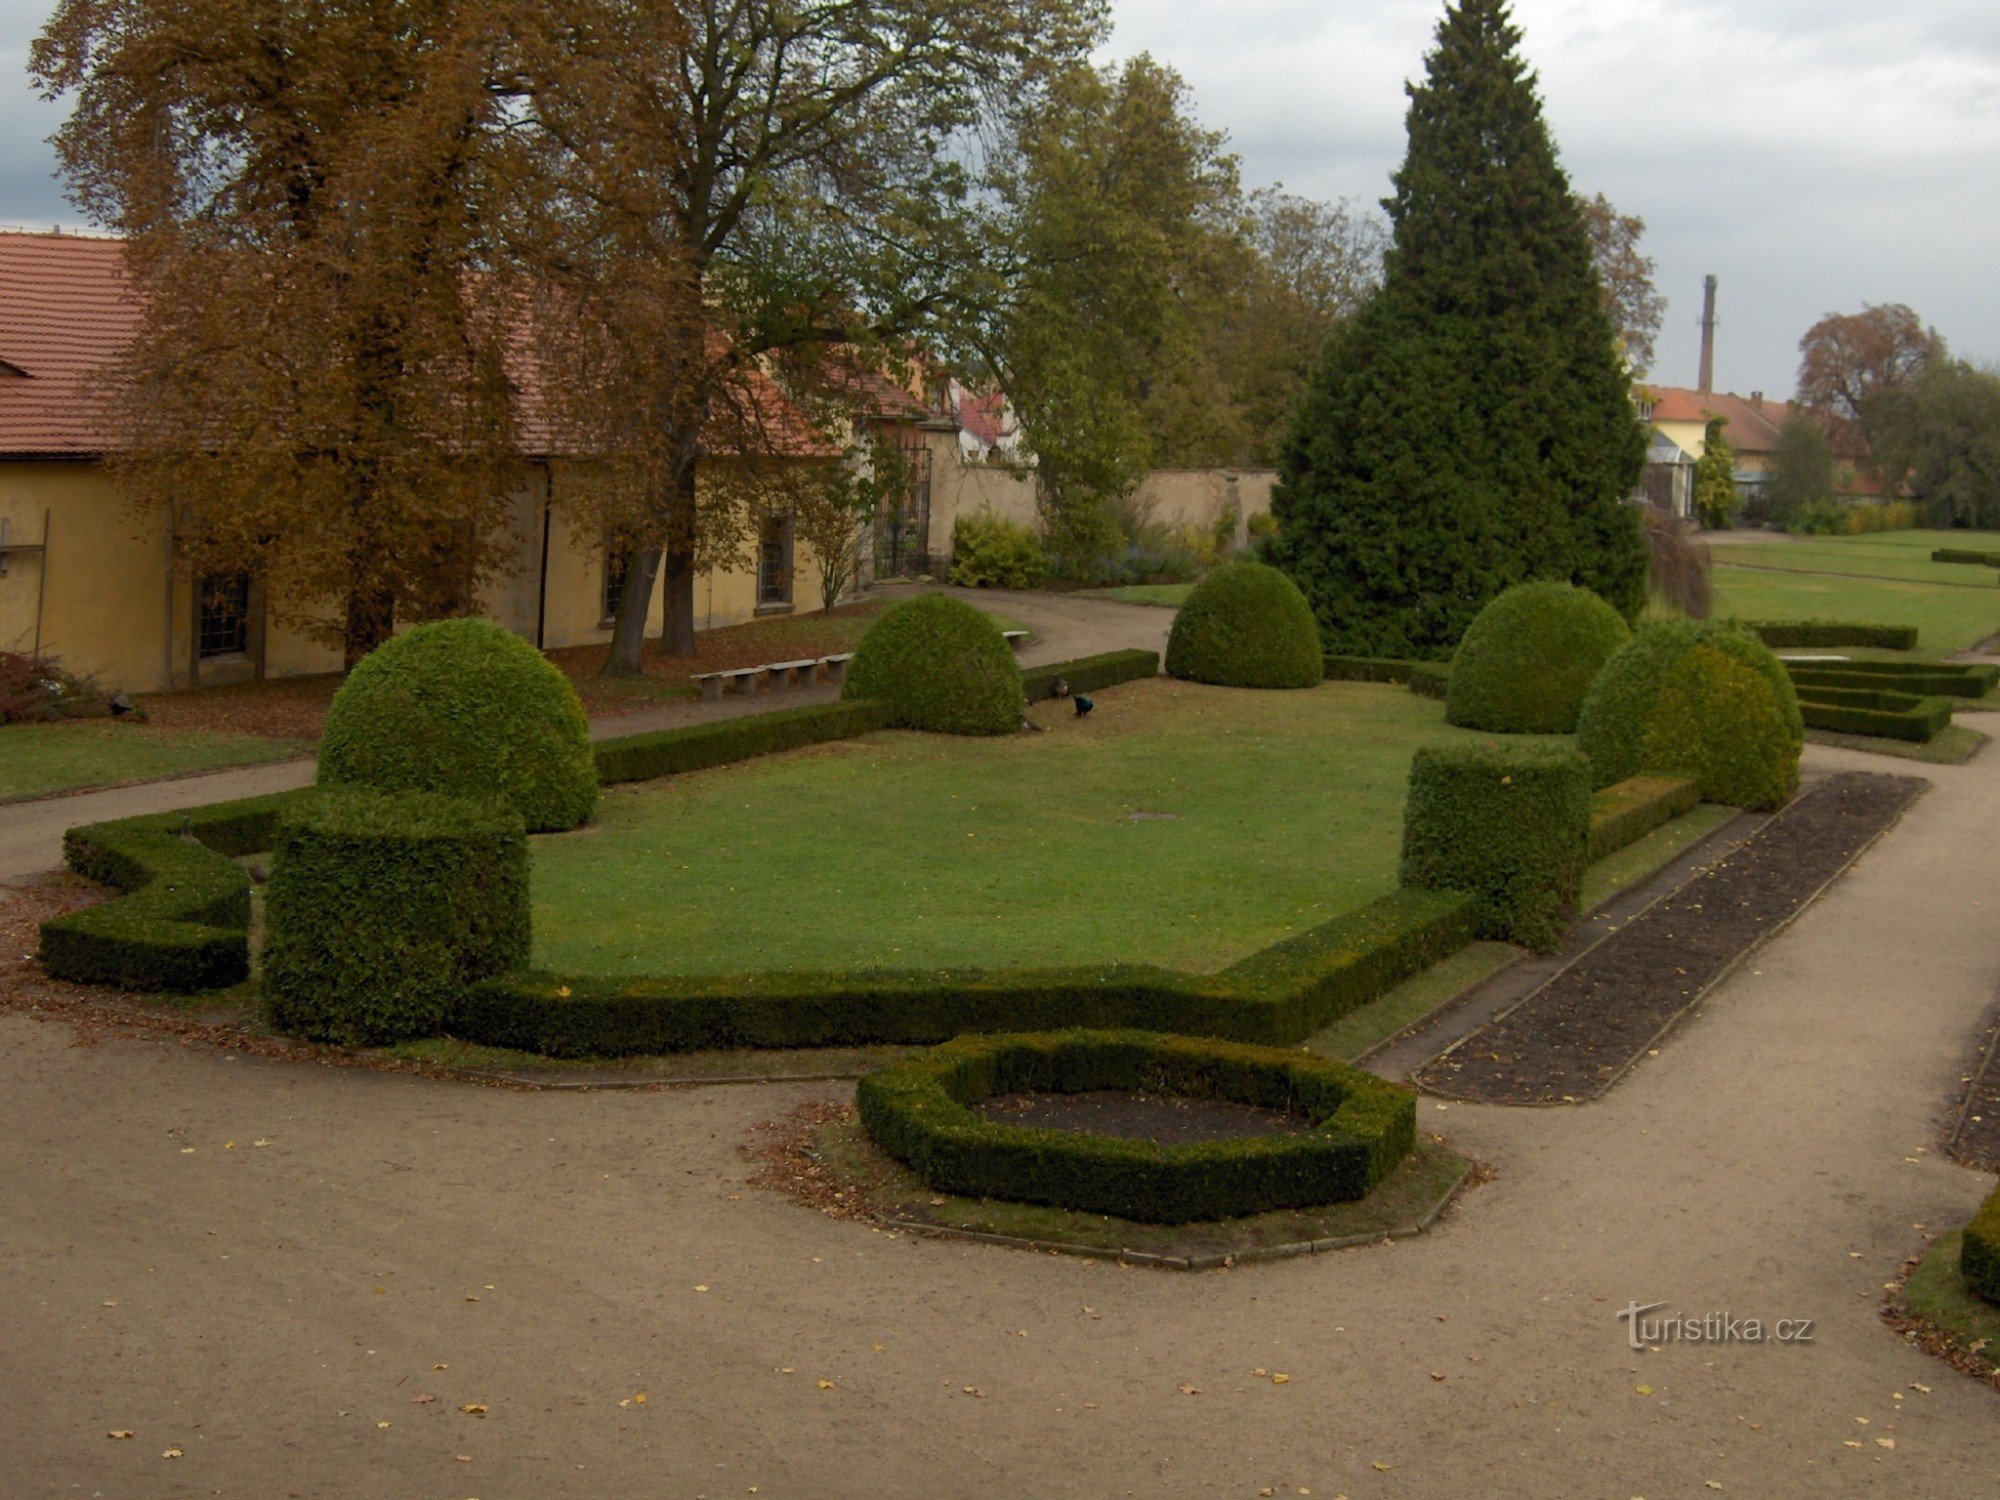 Φθινοπωρινός κήπος του κάστρου Libochovice